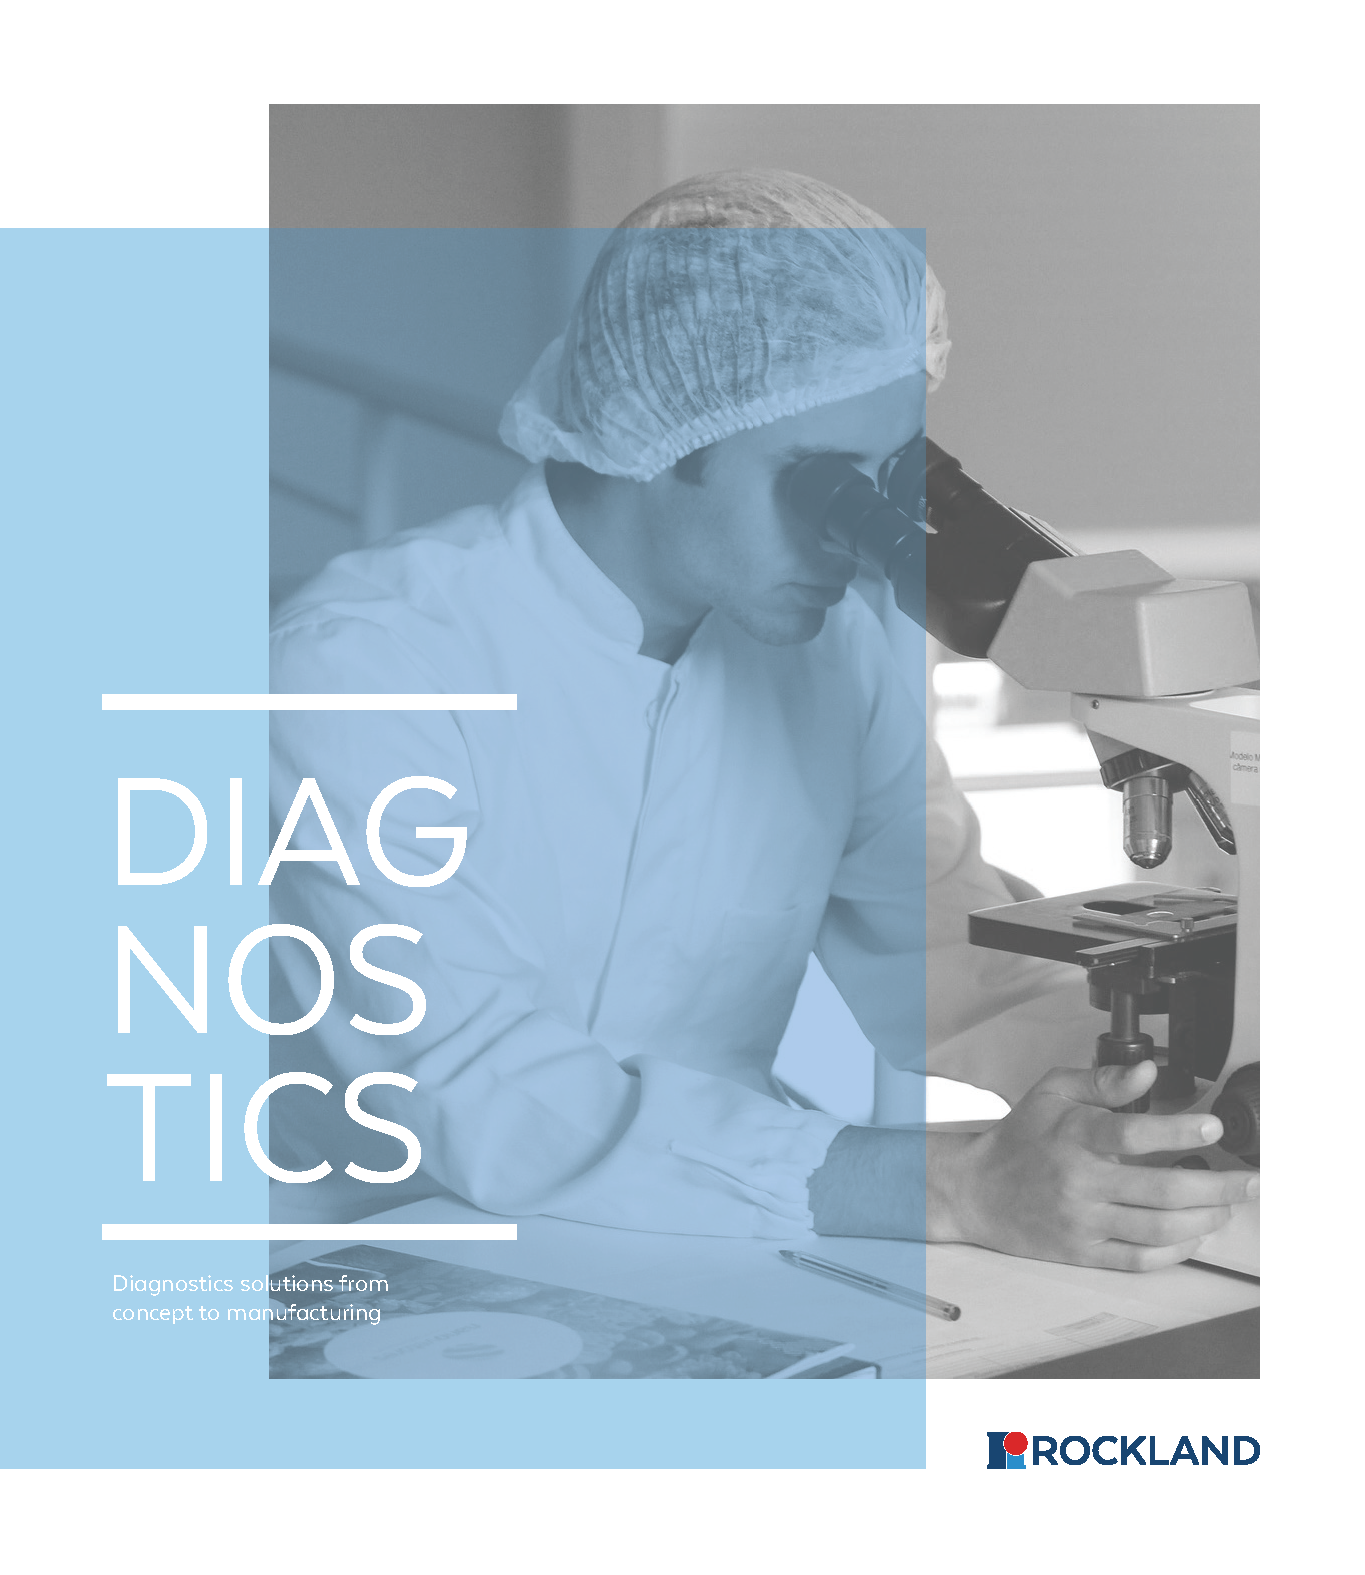 diagnostics_brochure-1.png